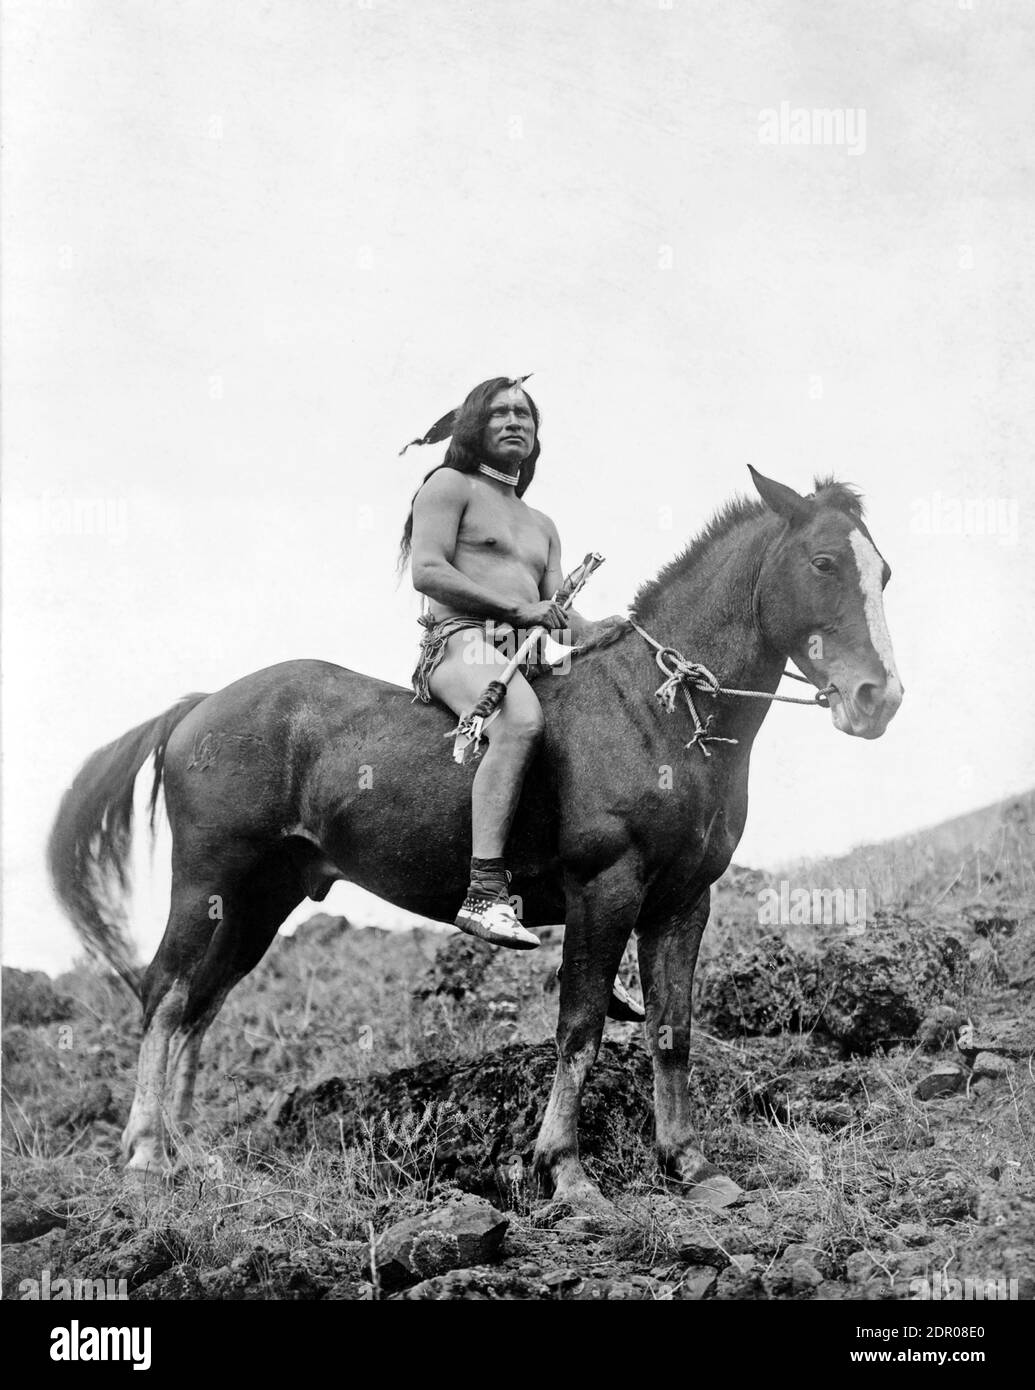 Fotografia d'epoca di un uomo Nez Percé, che indossa un panno di loin e mocassini, a cavallo. Fotografia storica di Edward S Curtis del 1907. Foto Stock